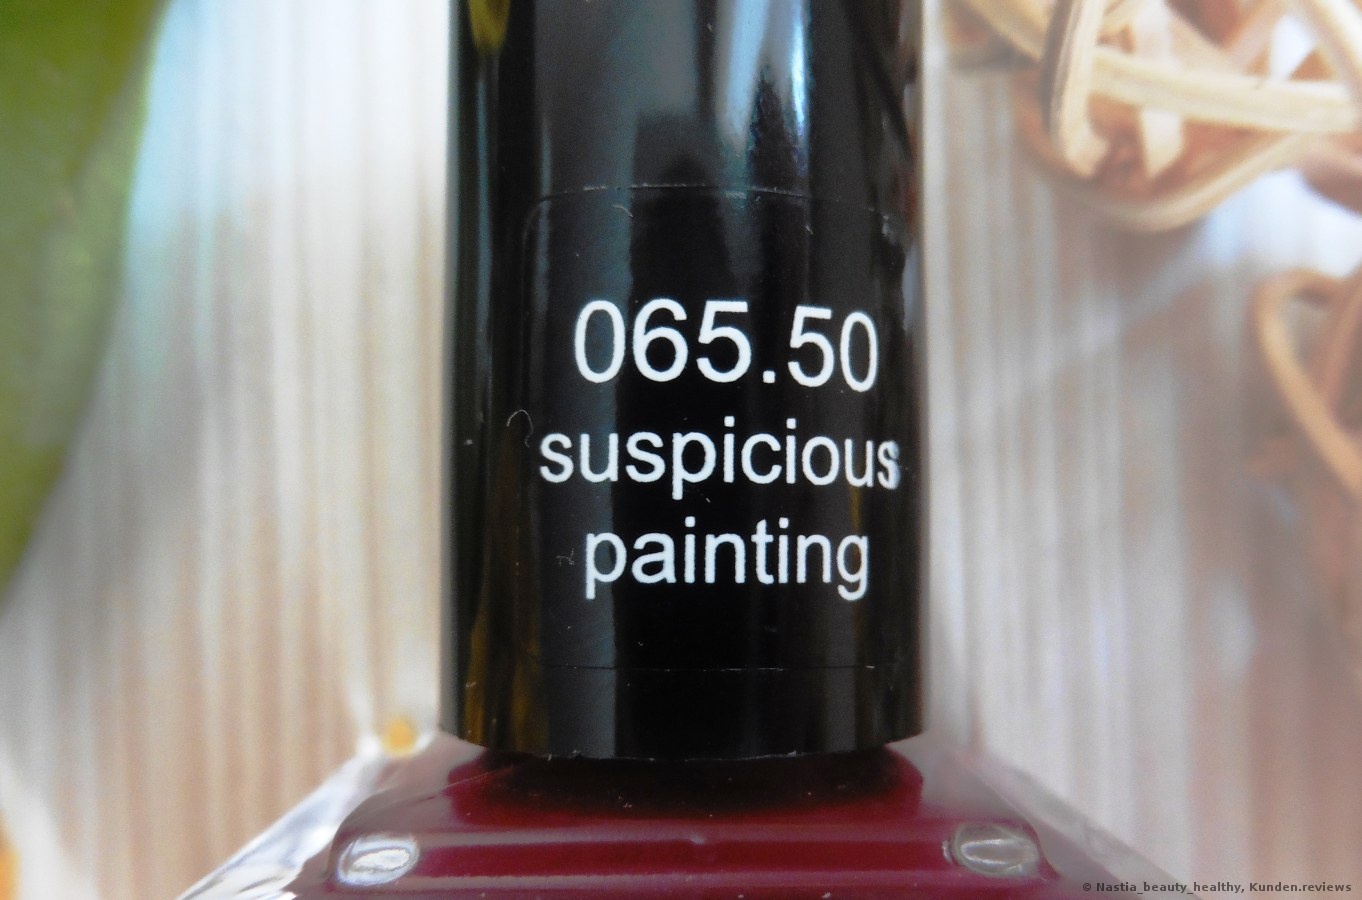 ANNY - 065.50 suspicious painting